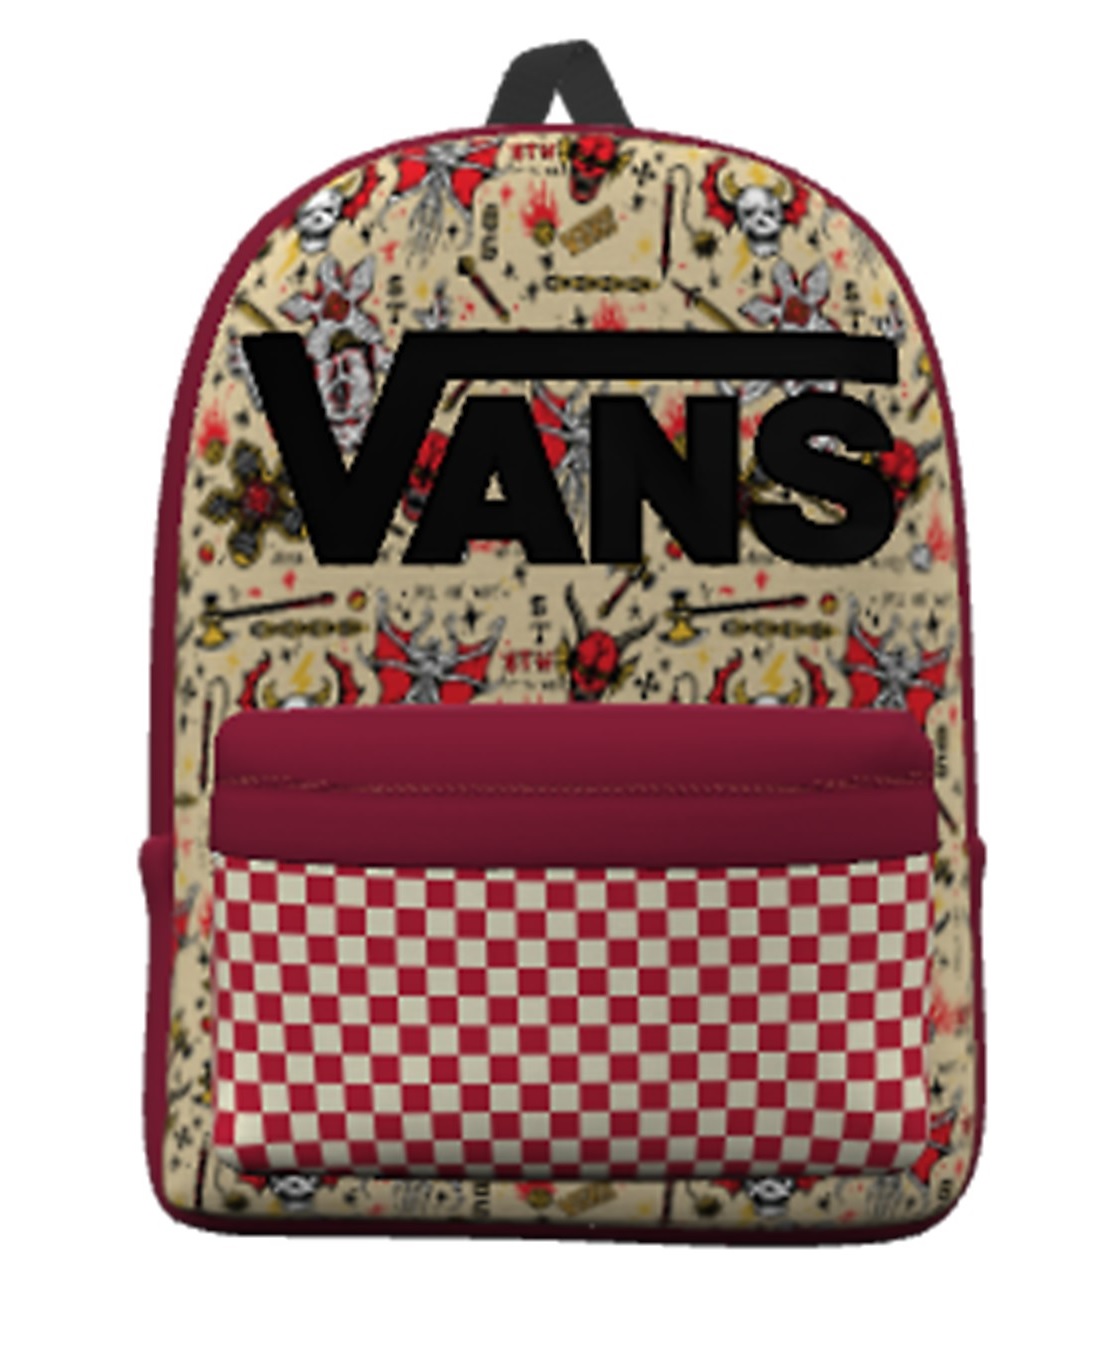 Vans faz colaboração com a série Stranger Things, da Netflix, e lança tênis, roupas e mochilas